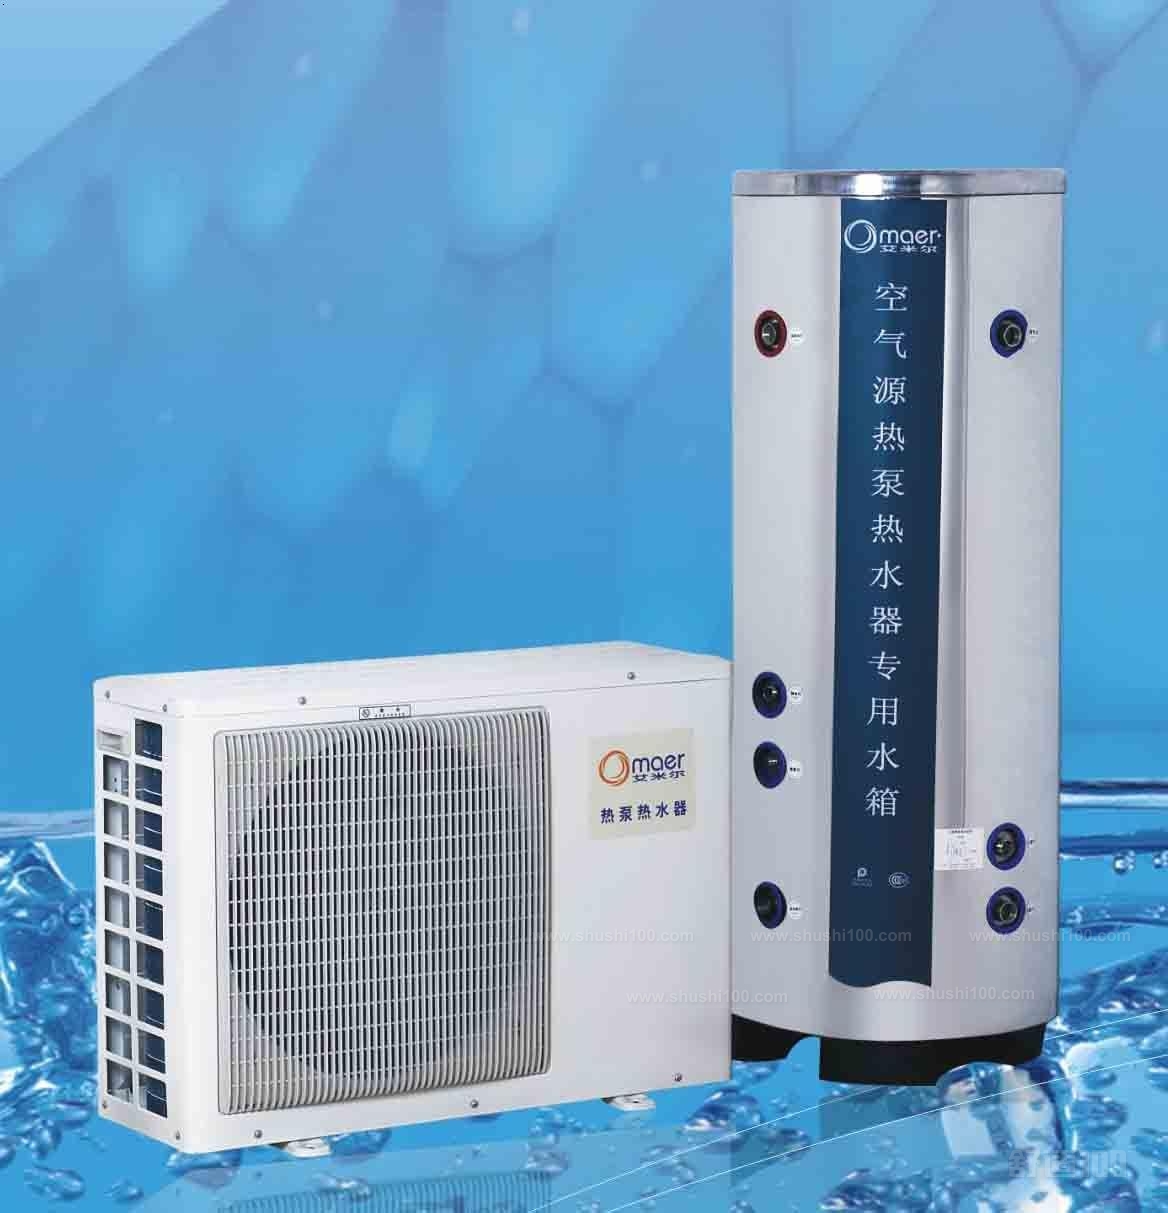 空气能源热泵热水器—空气能源热泵热水器要如何购买才好